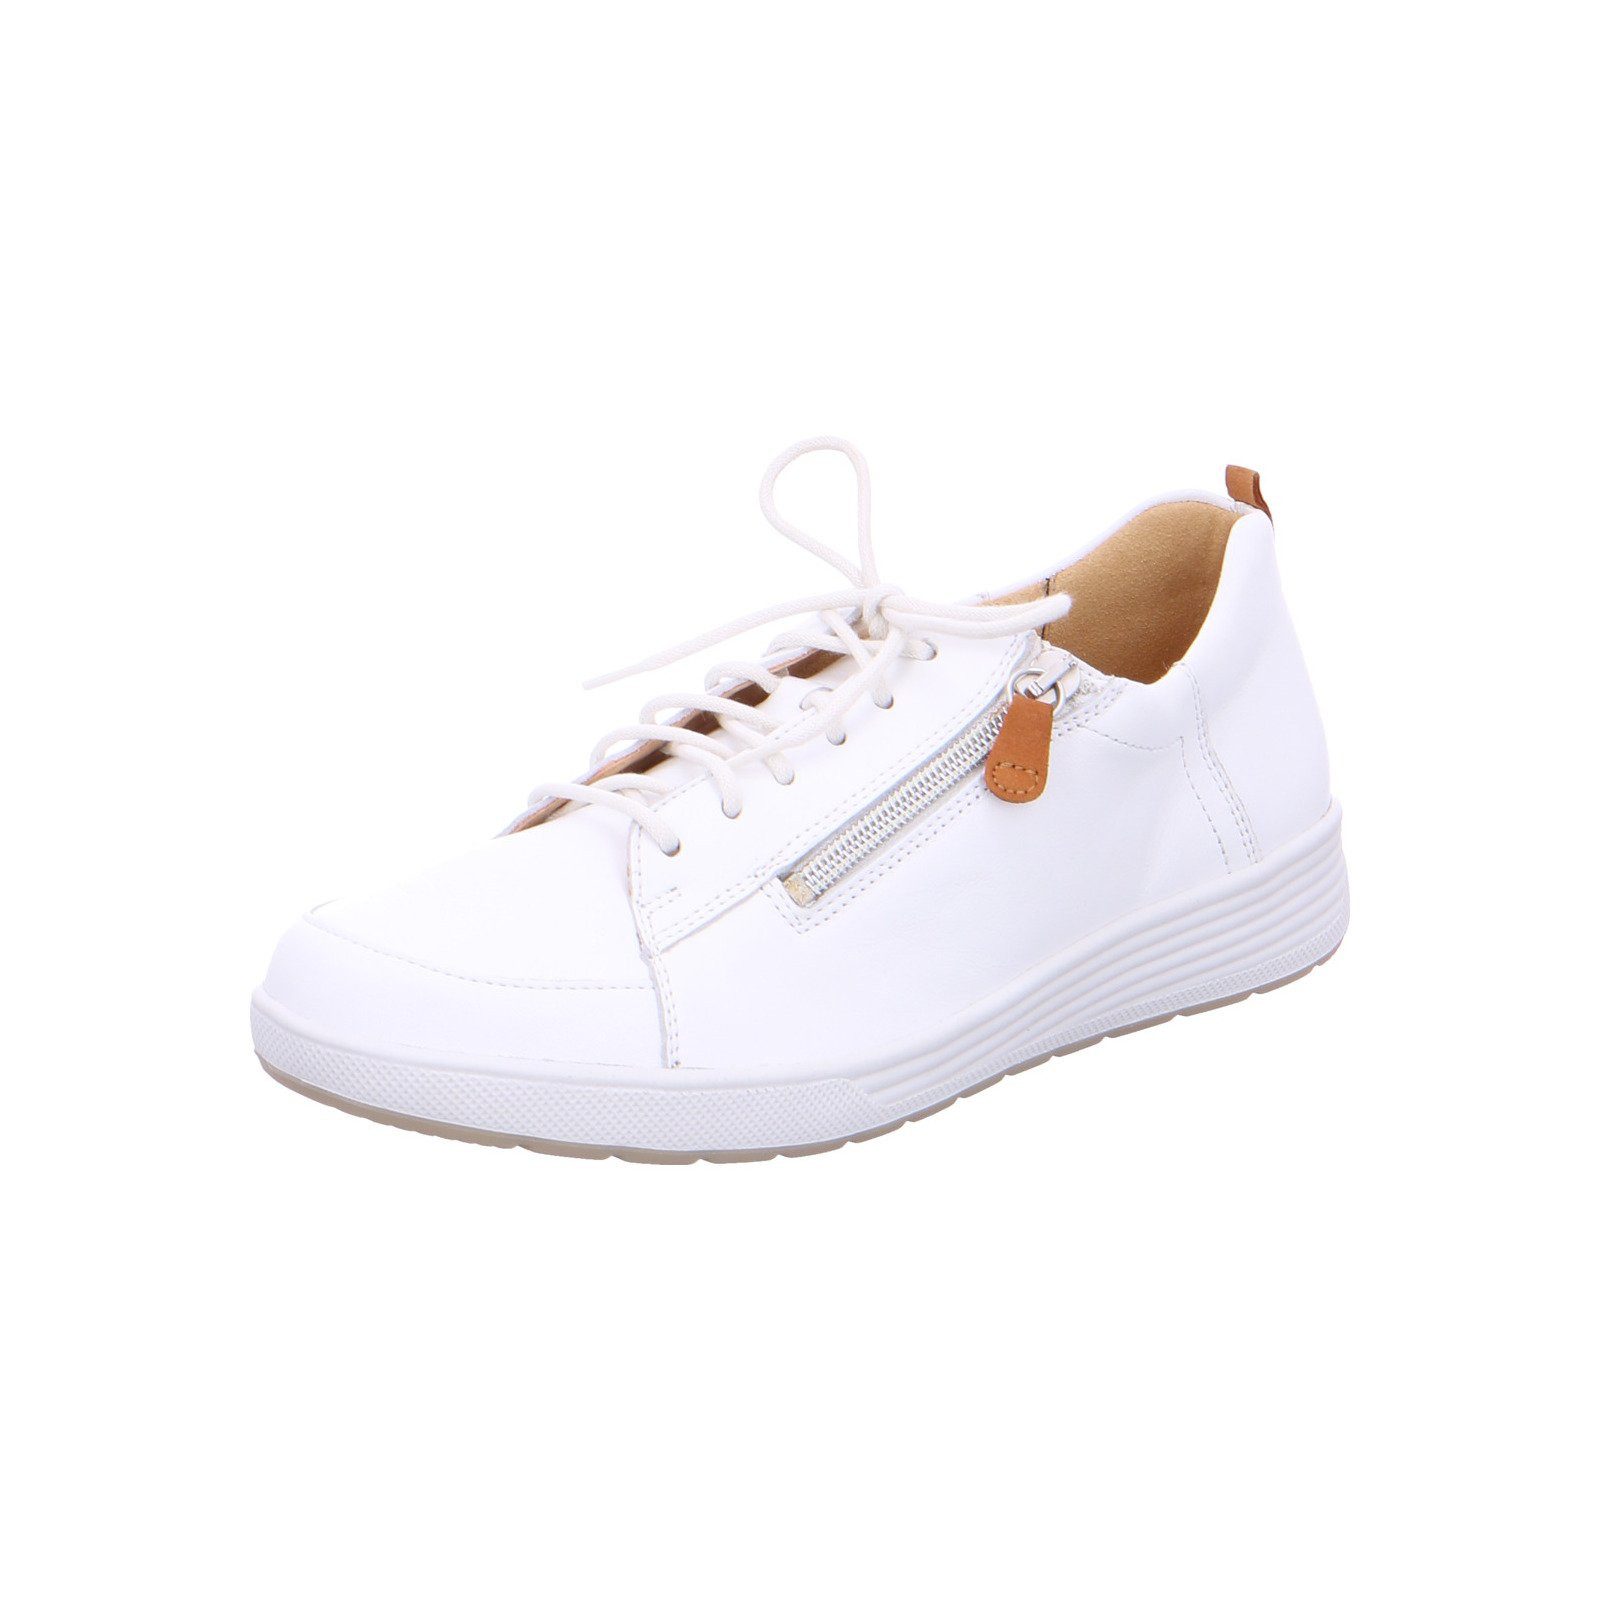 Ganter KLARA - Damen Schuhe Schnürschuh Leder weiß